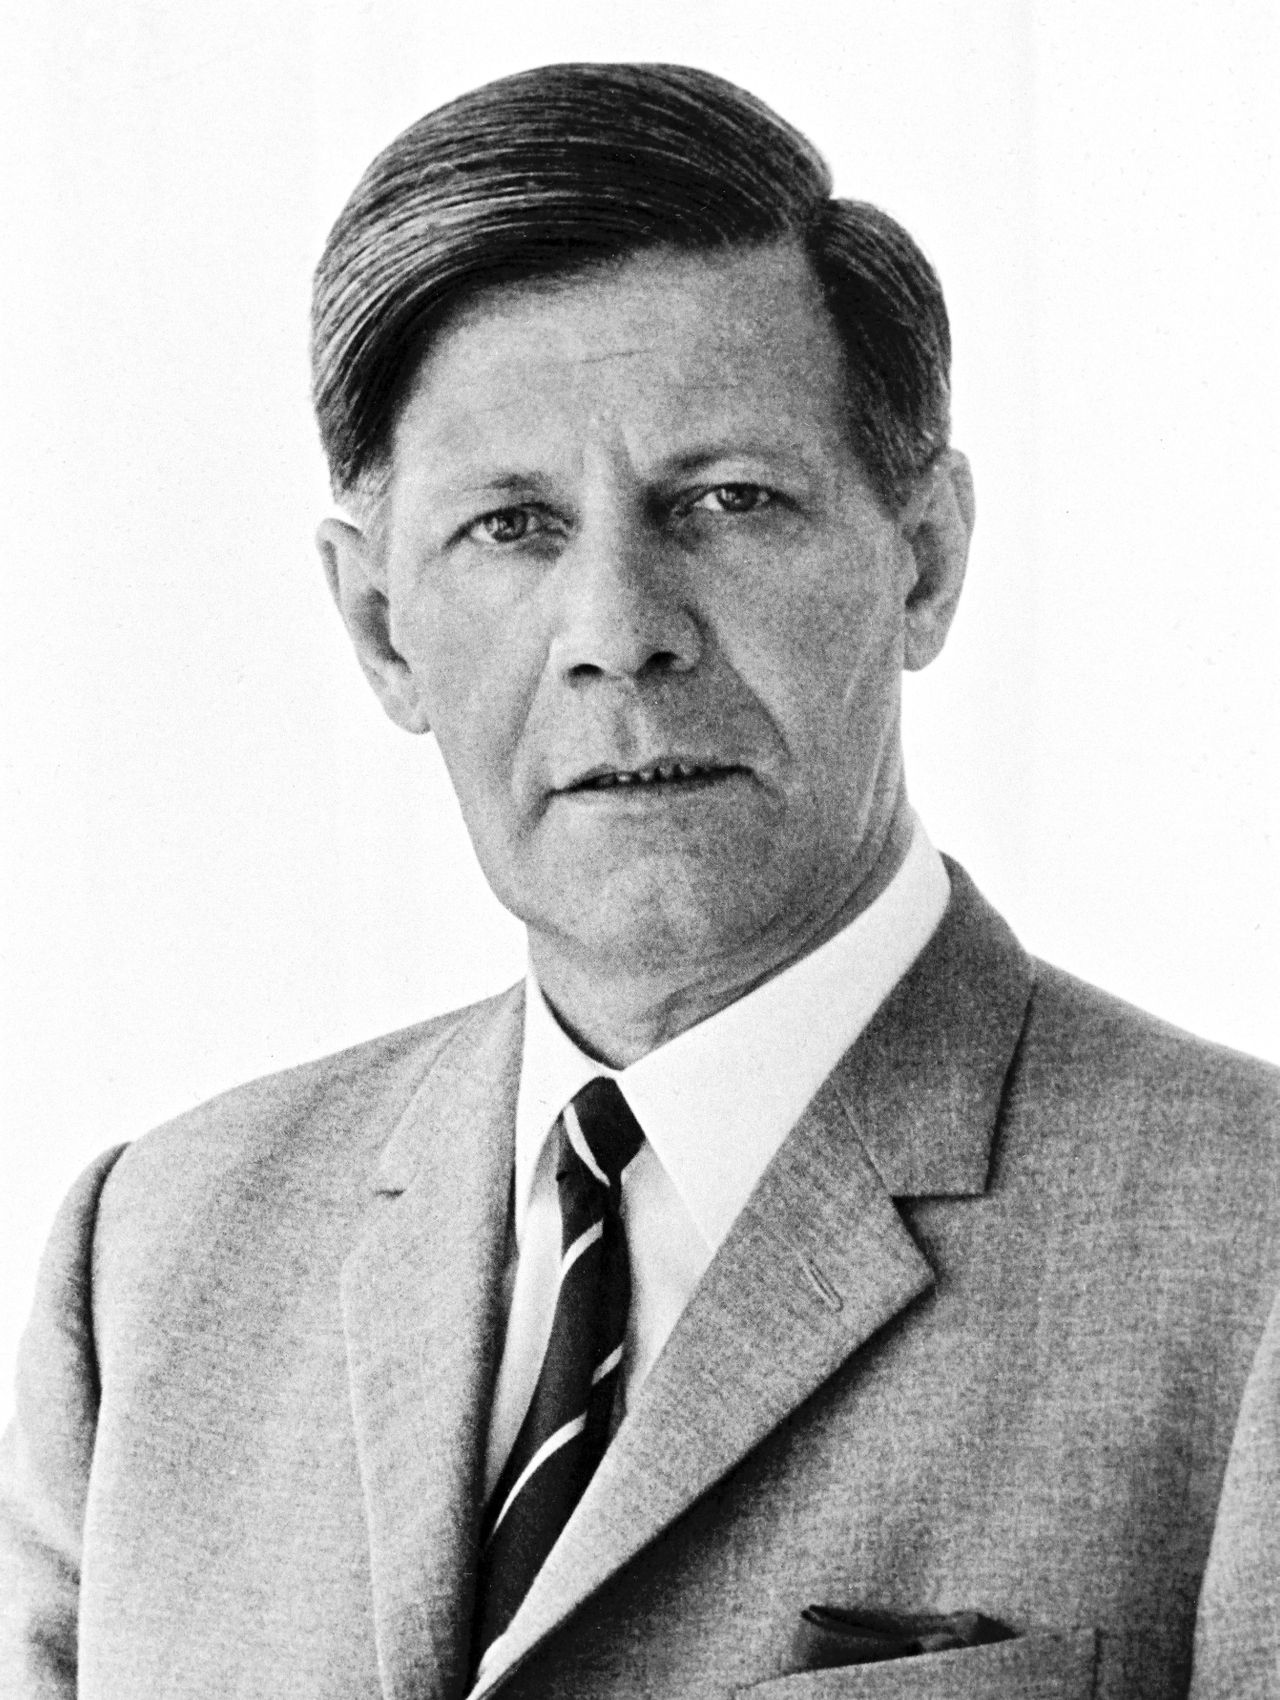 Offizielles Porträt von Helmut Schmidt, Bundesminister der Verteidigung (1969-1972).